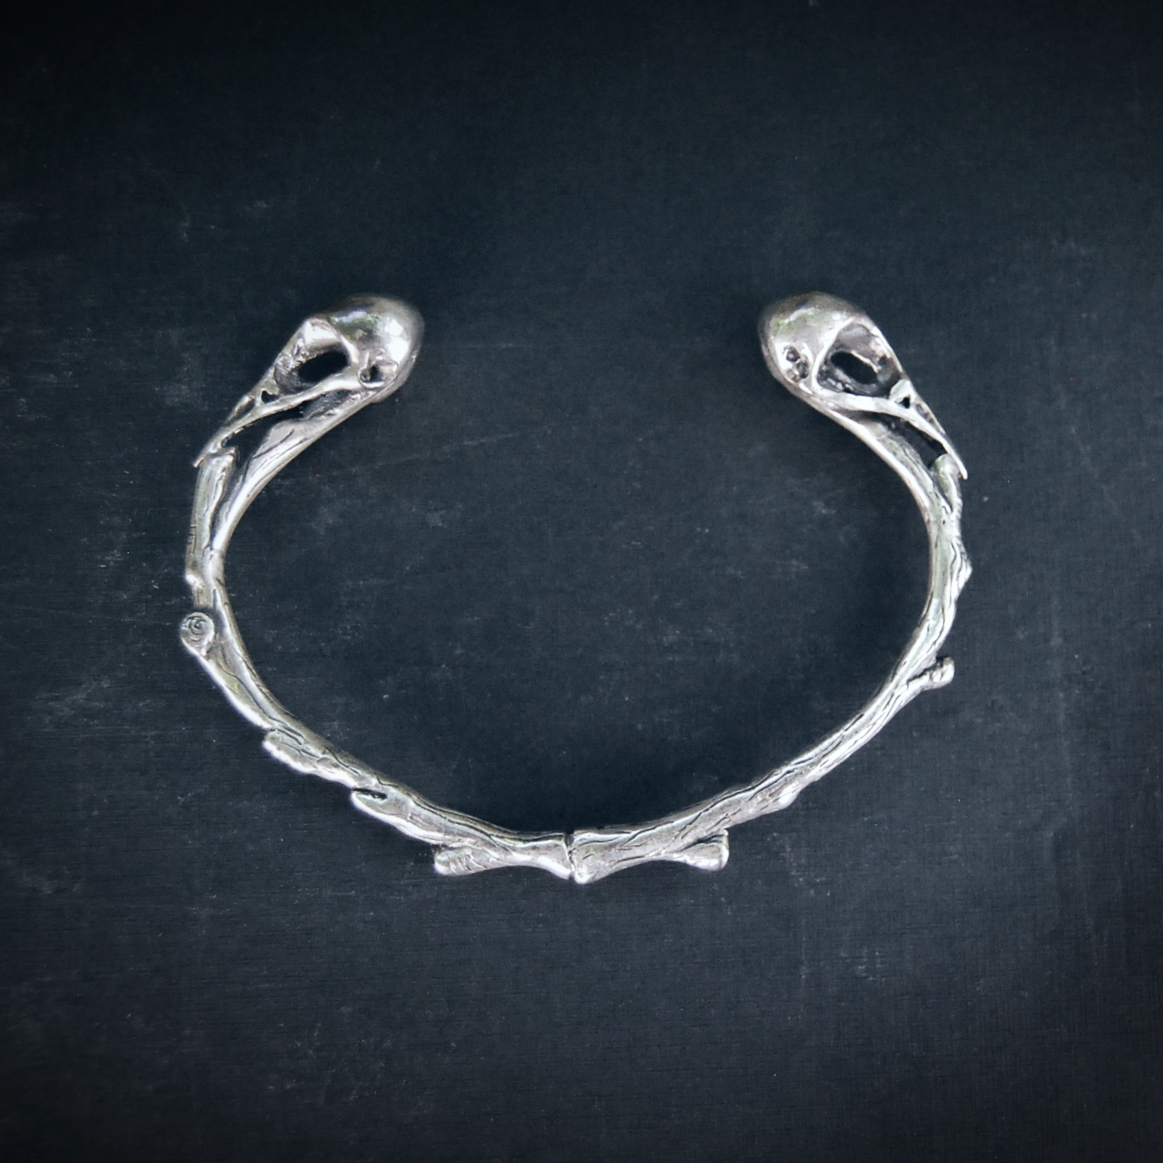 Bird Skull bracelet